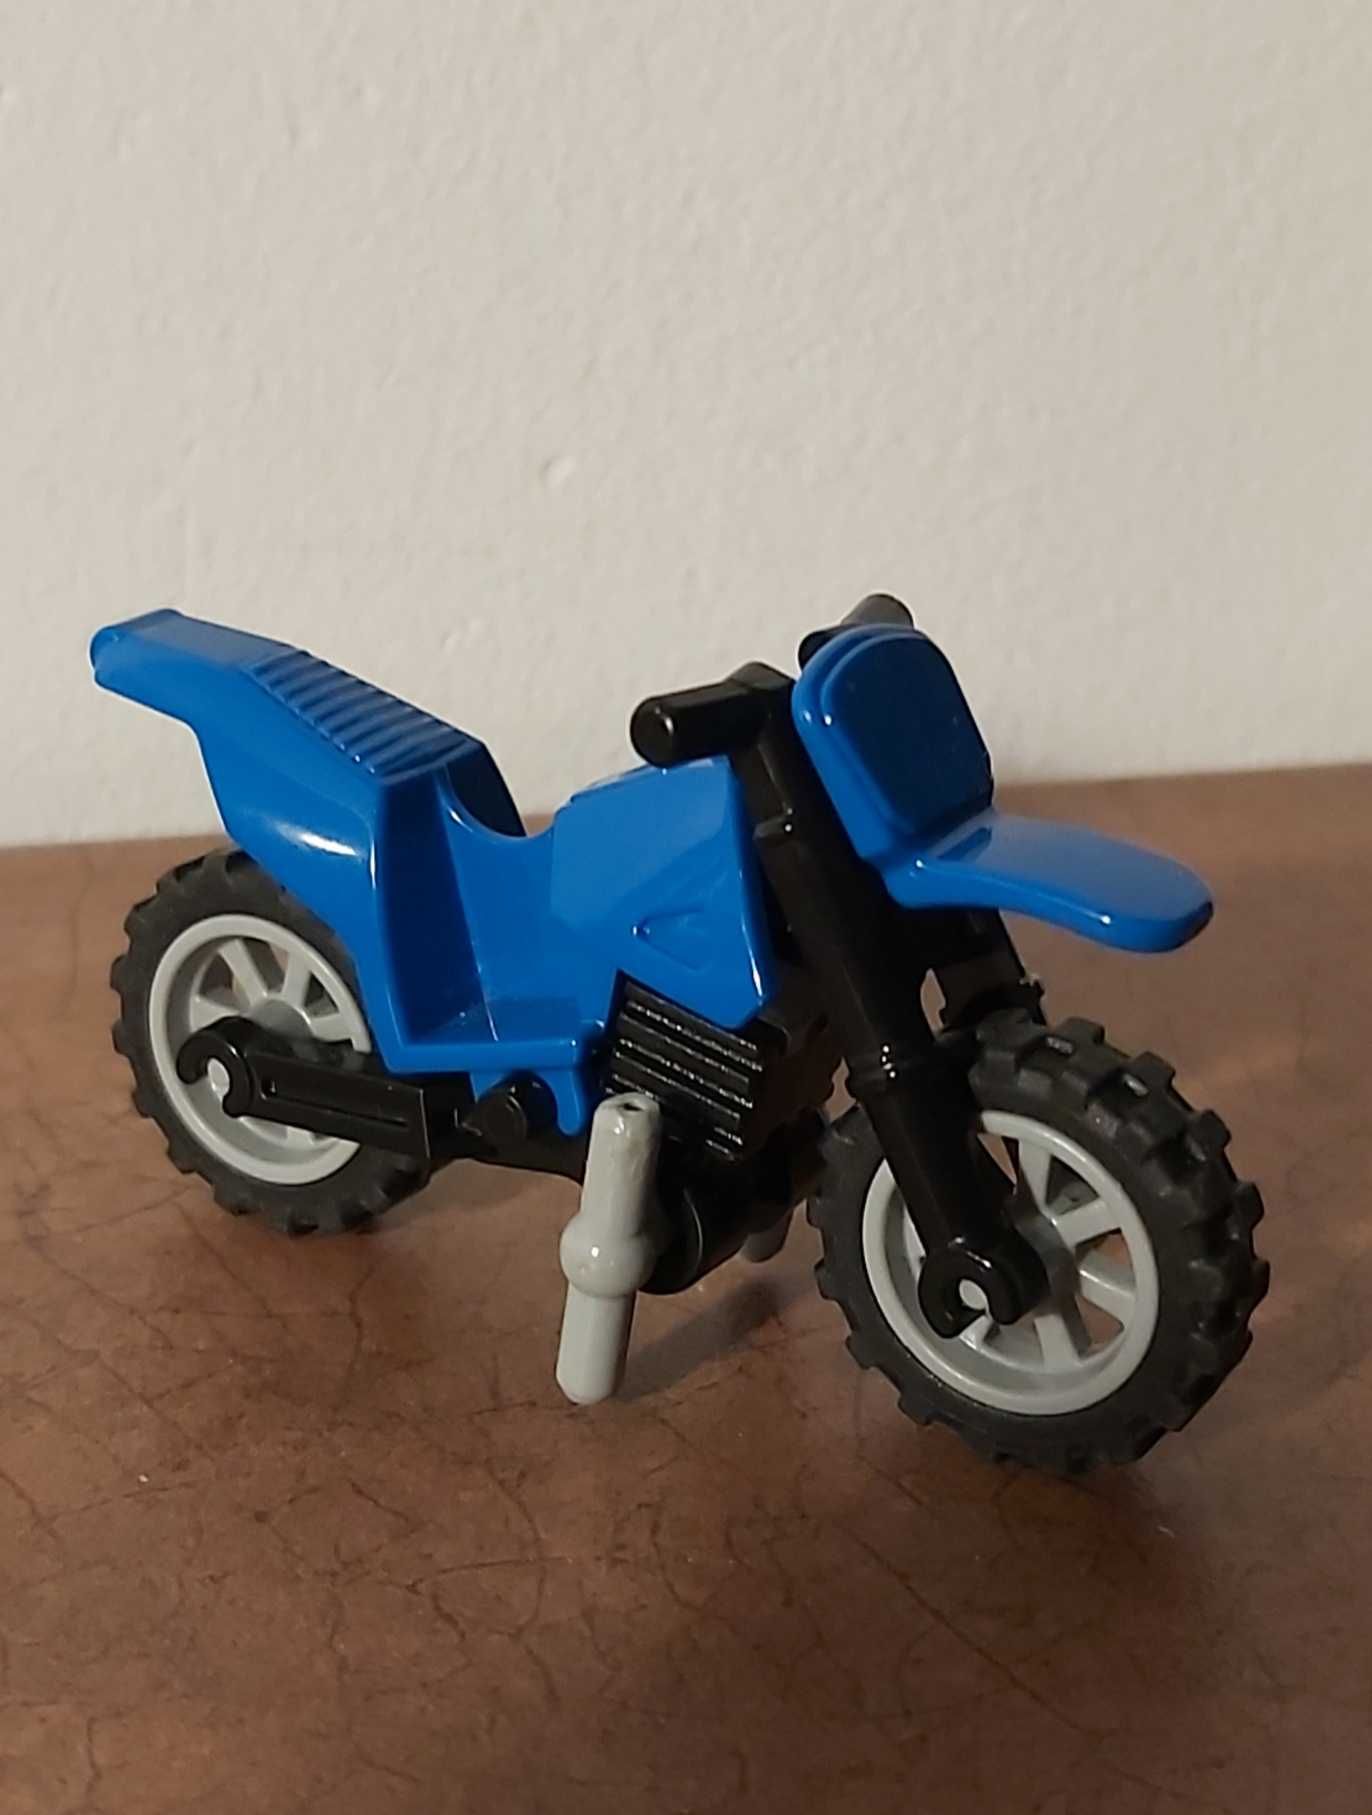 Lego City motocykl niebieski